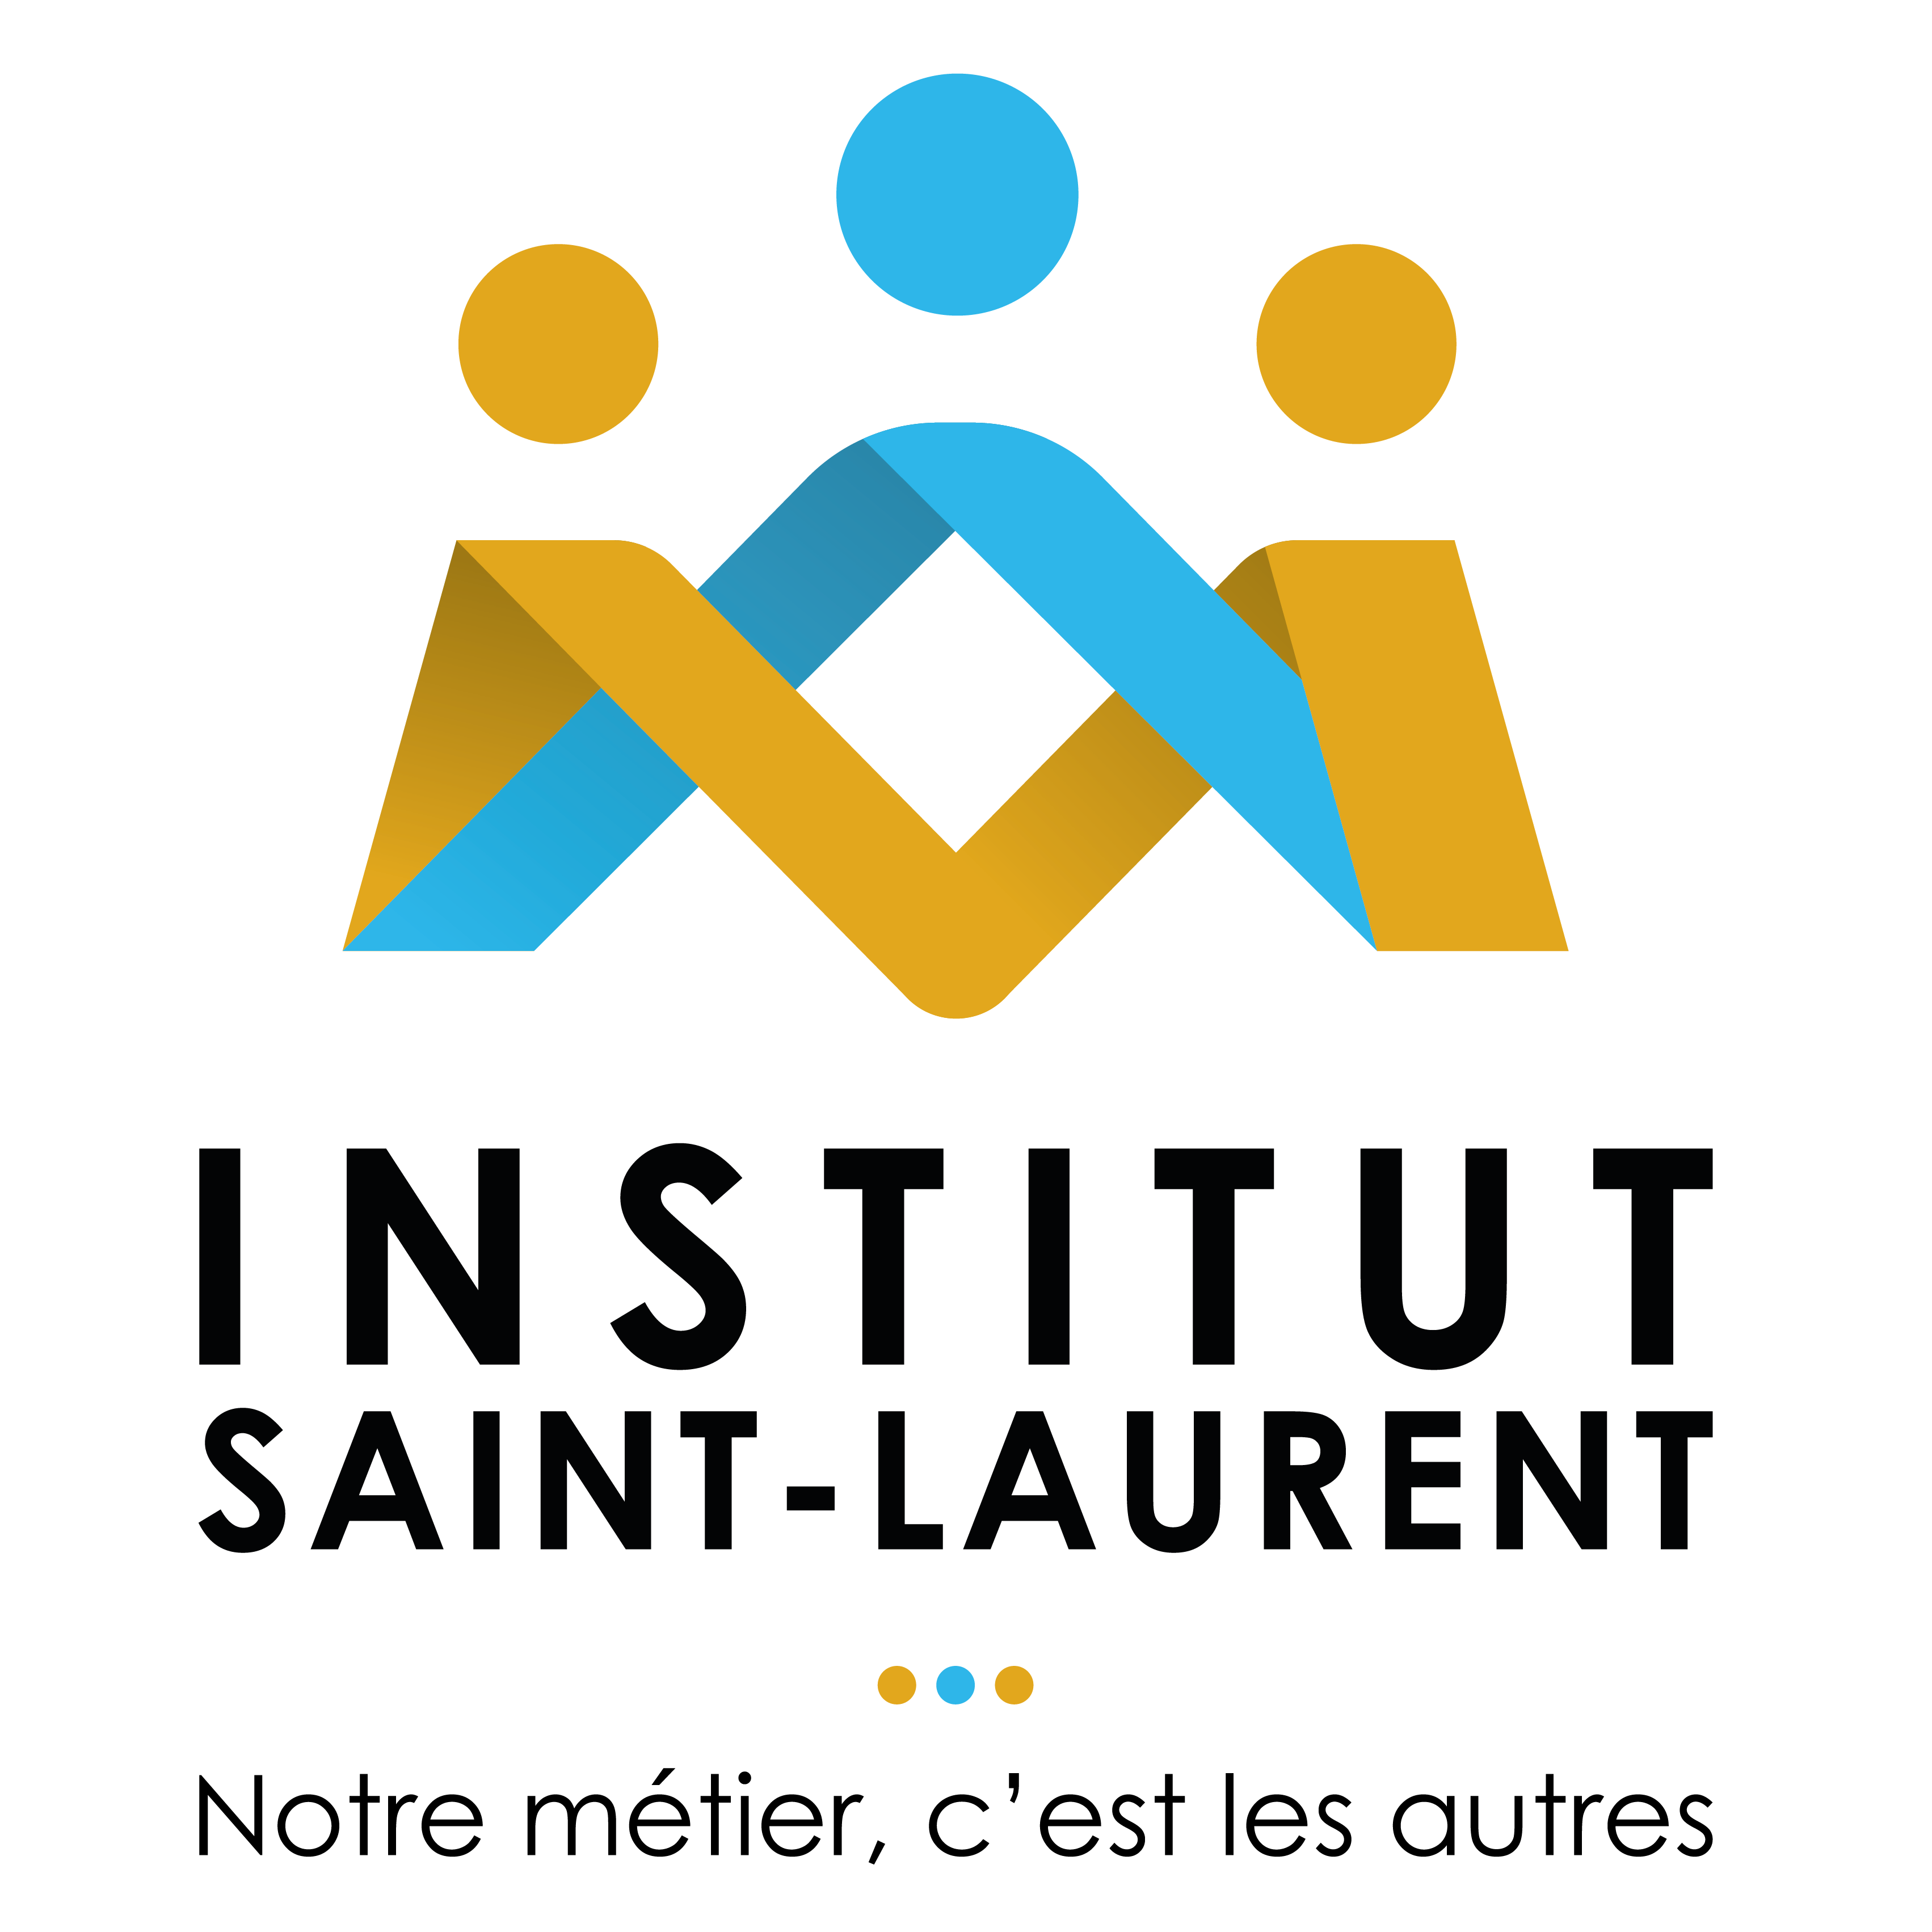 ISL__INSTITUT-SAINT-LAURENT_800x800px